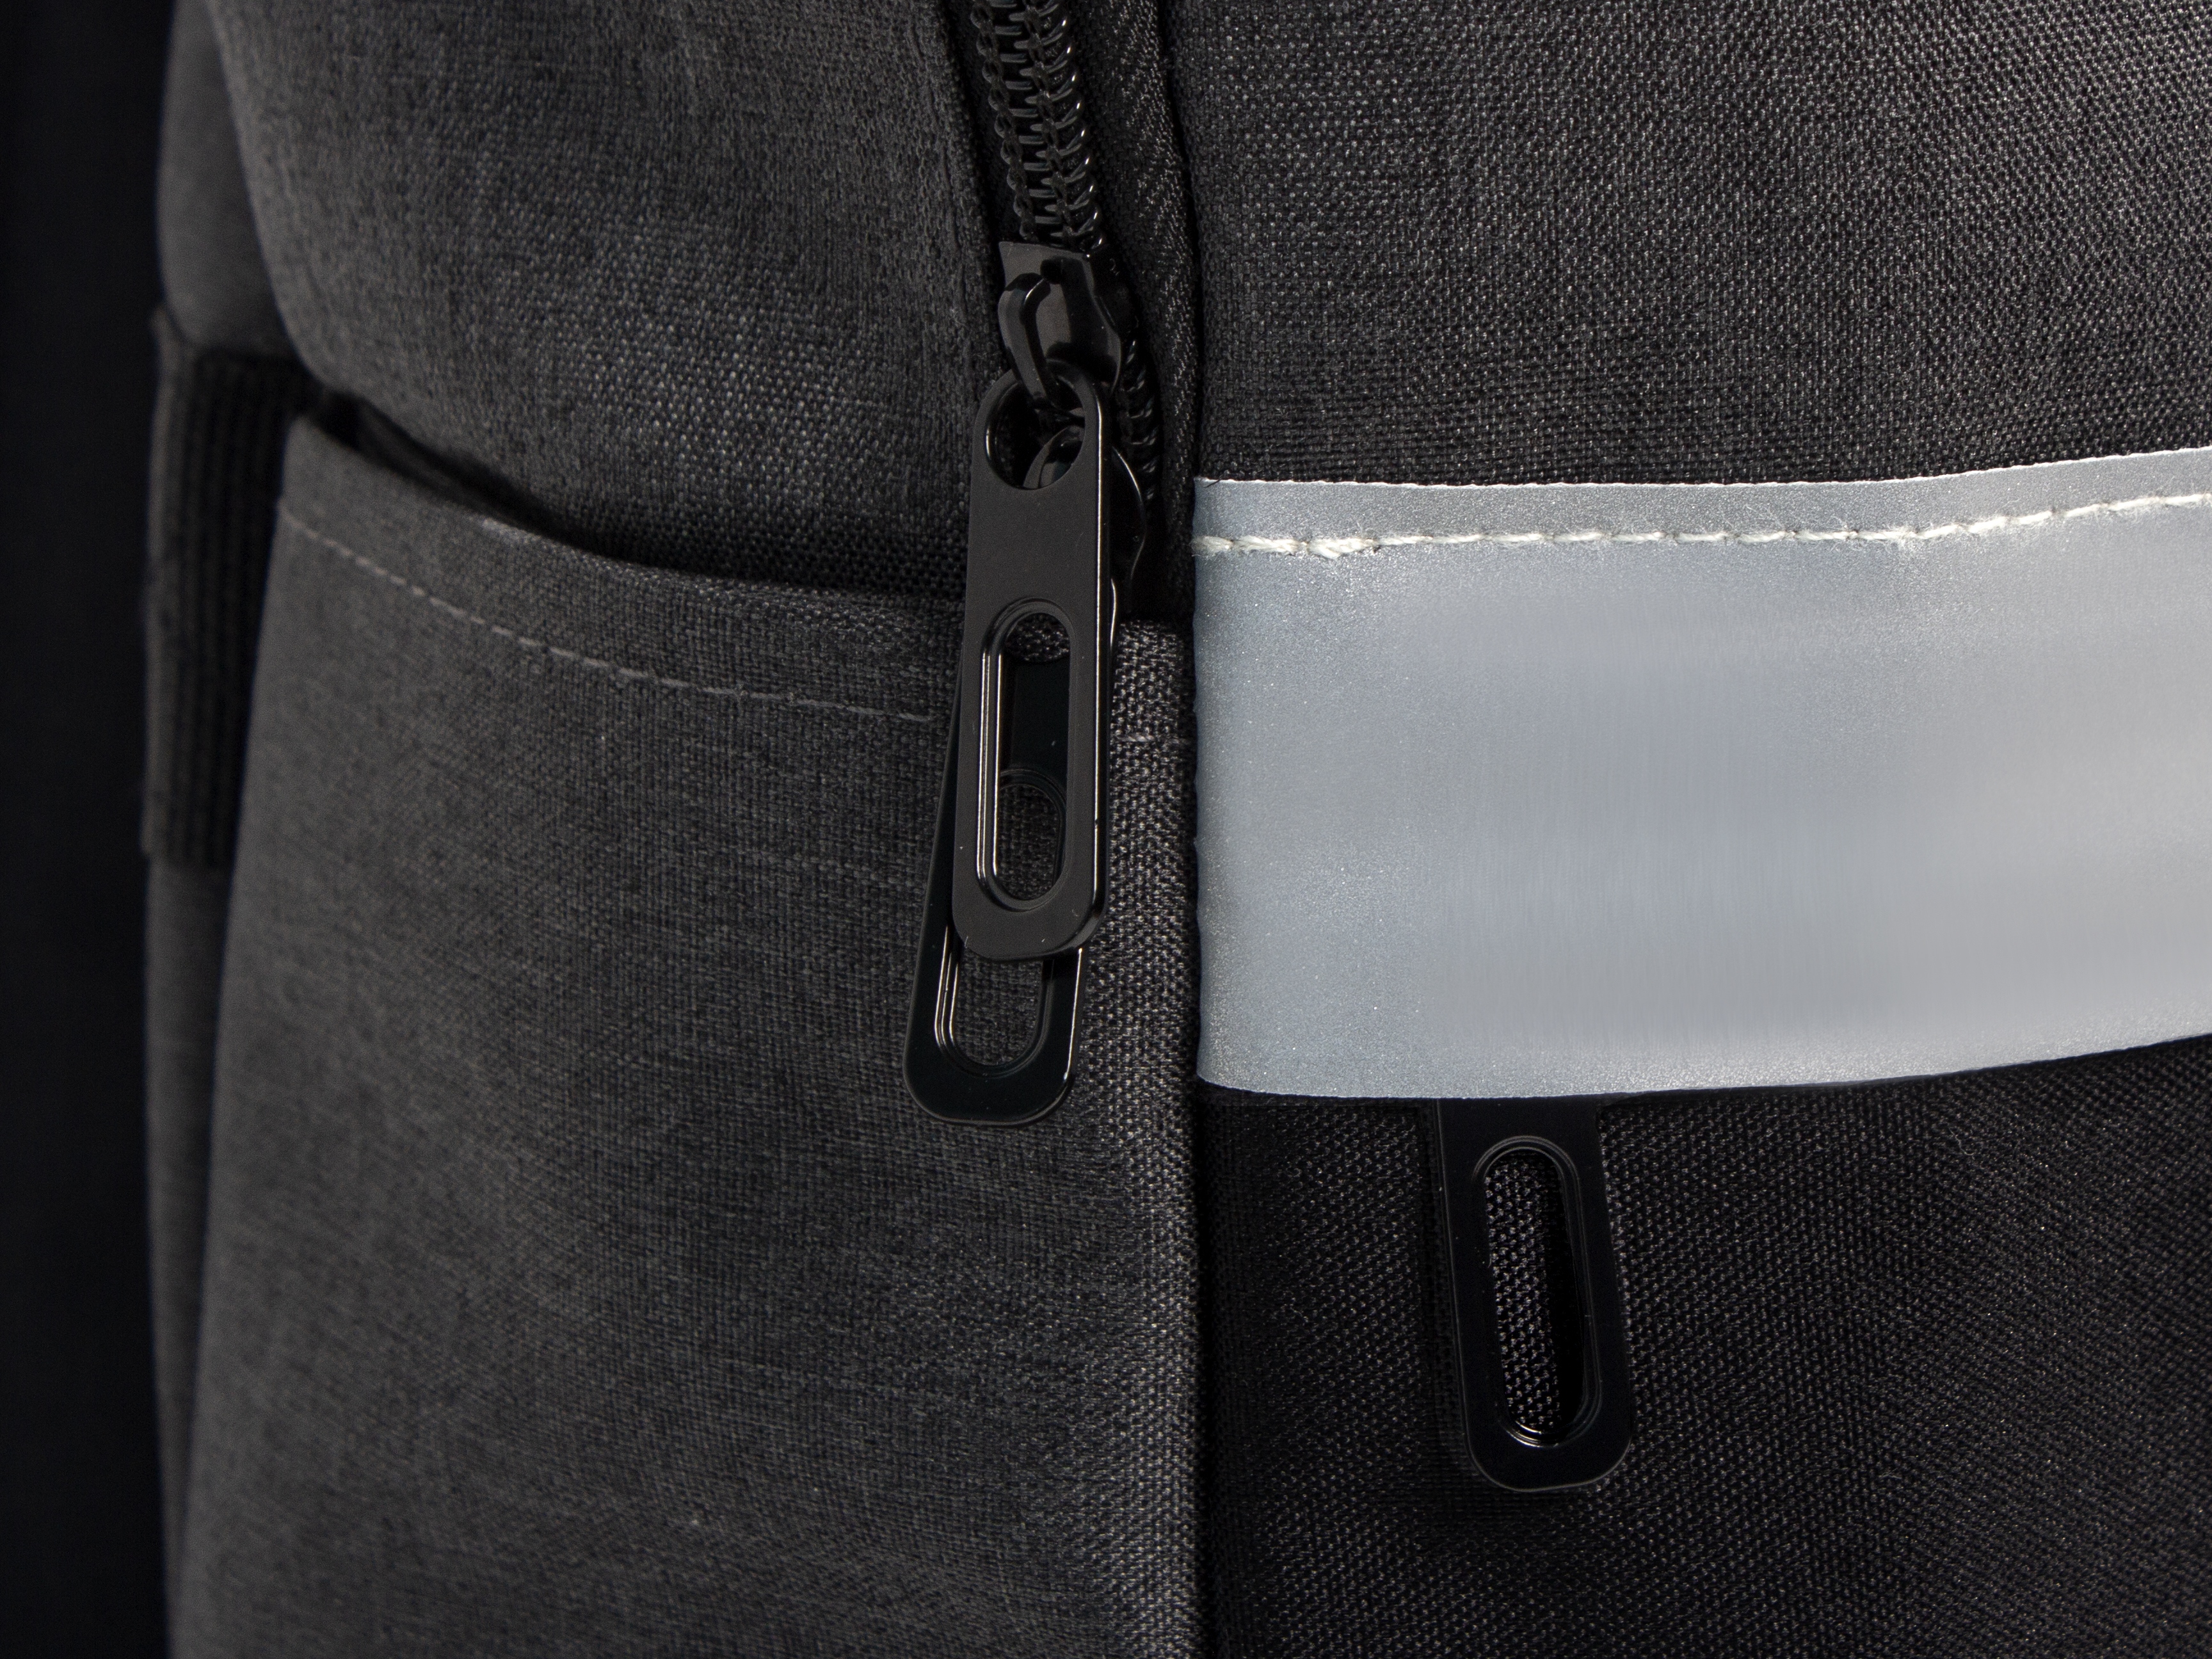 Рюкзак Merit со светоотражающей полосой и отделением для ноутбука 15.6'', темно-серый/черный - купить оптом